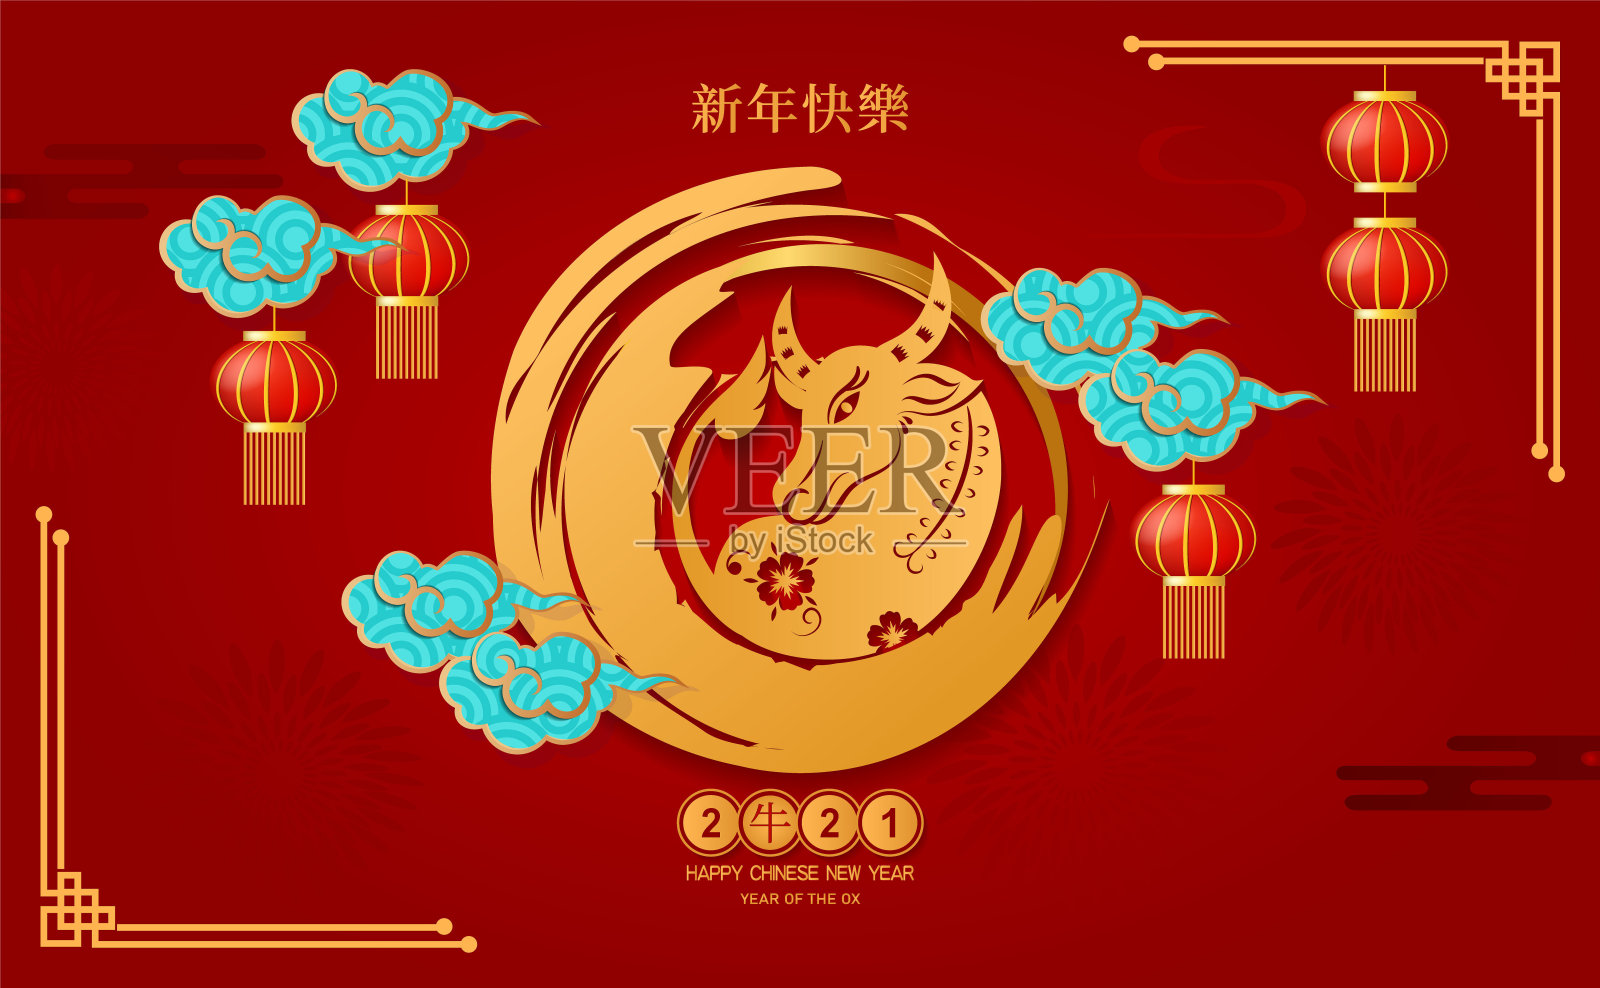 新年快乐2021年的牛在红纸剪纸牛字符和亚洲元素与工艺风格的背景。中文翻译是牛年春节快乐。设计模板素材